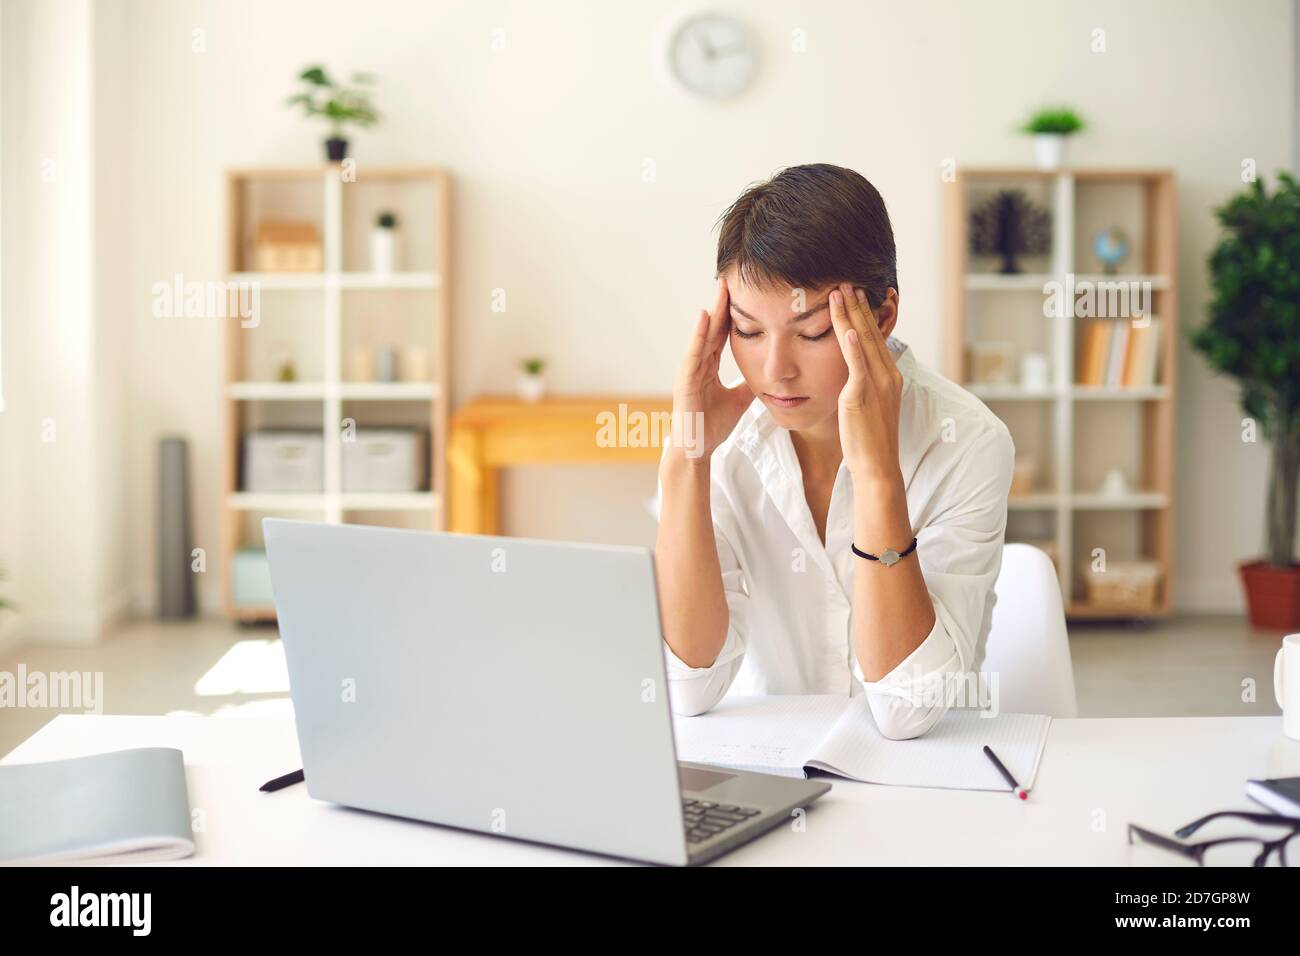 Femme fatiguée avec mal de tête ou vision floue massant les temples salon avec bureau et ordinateur portable Banque D'Images